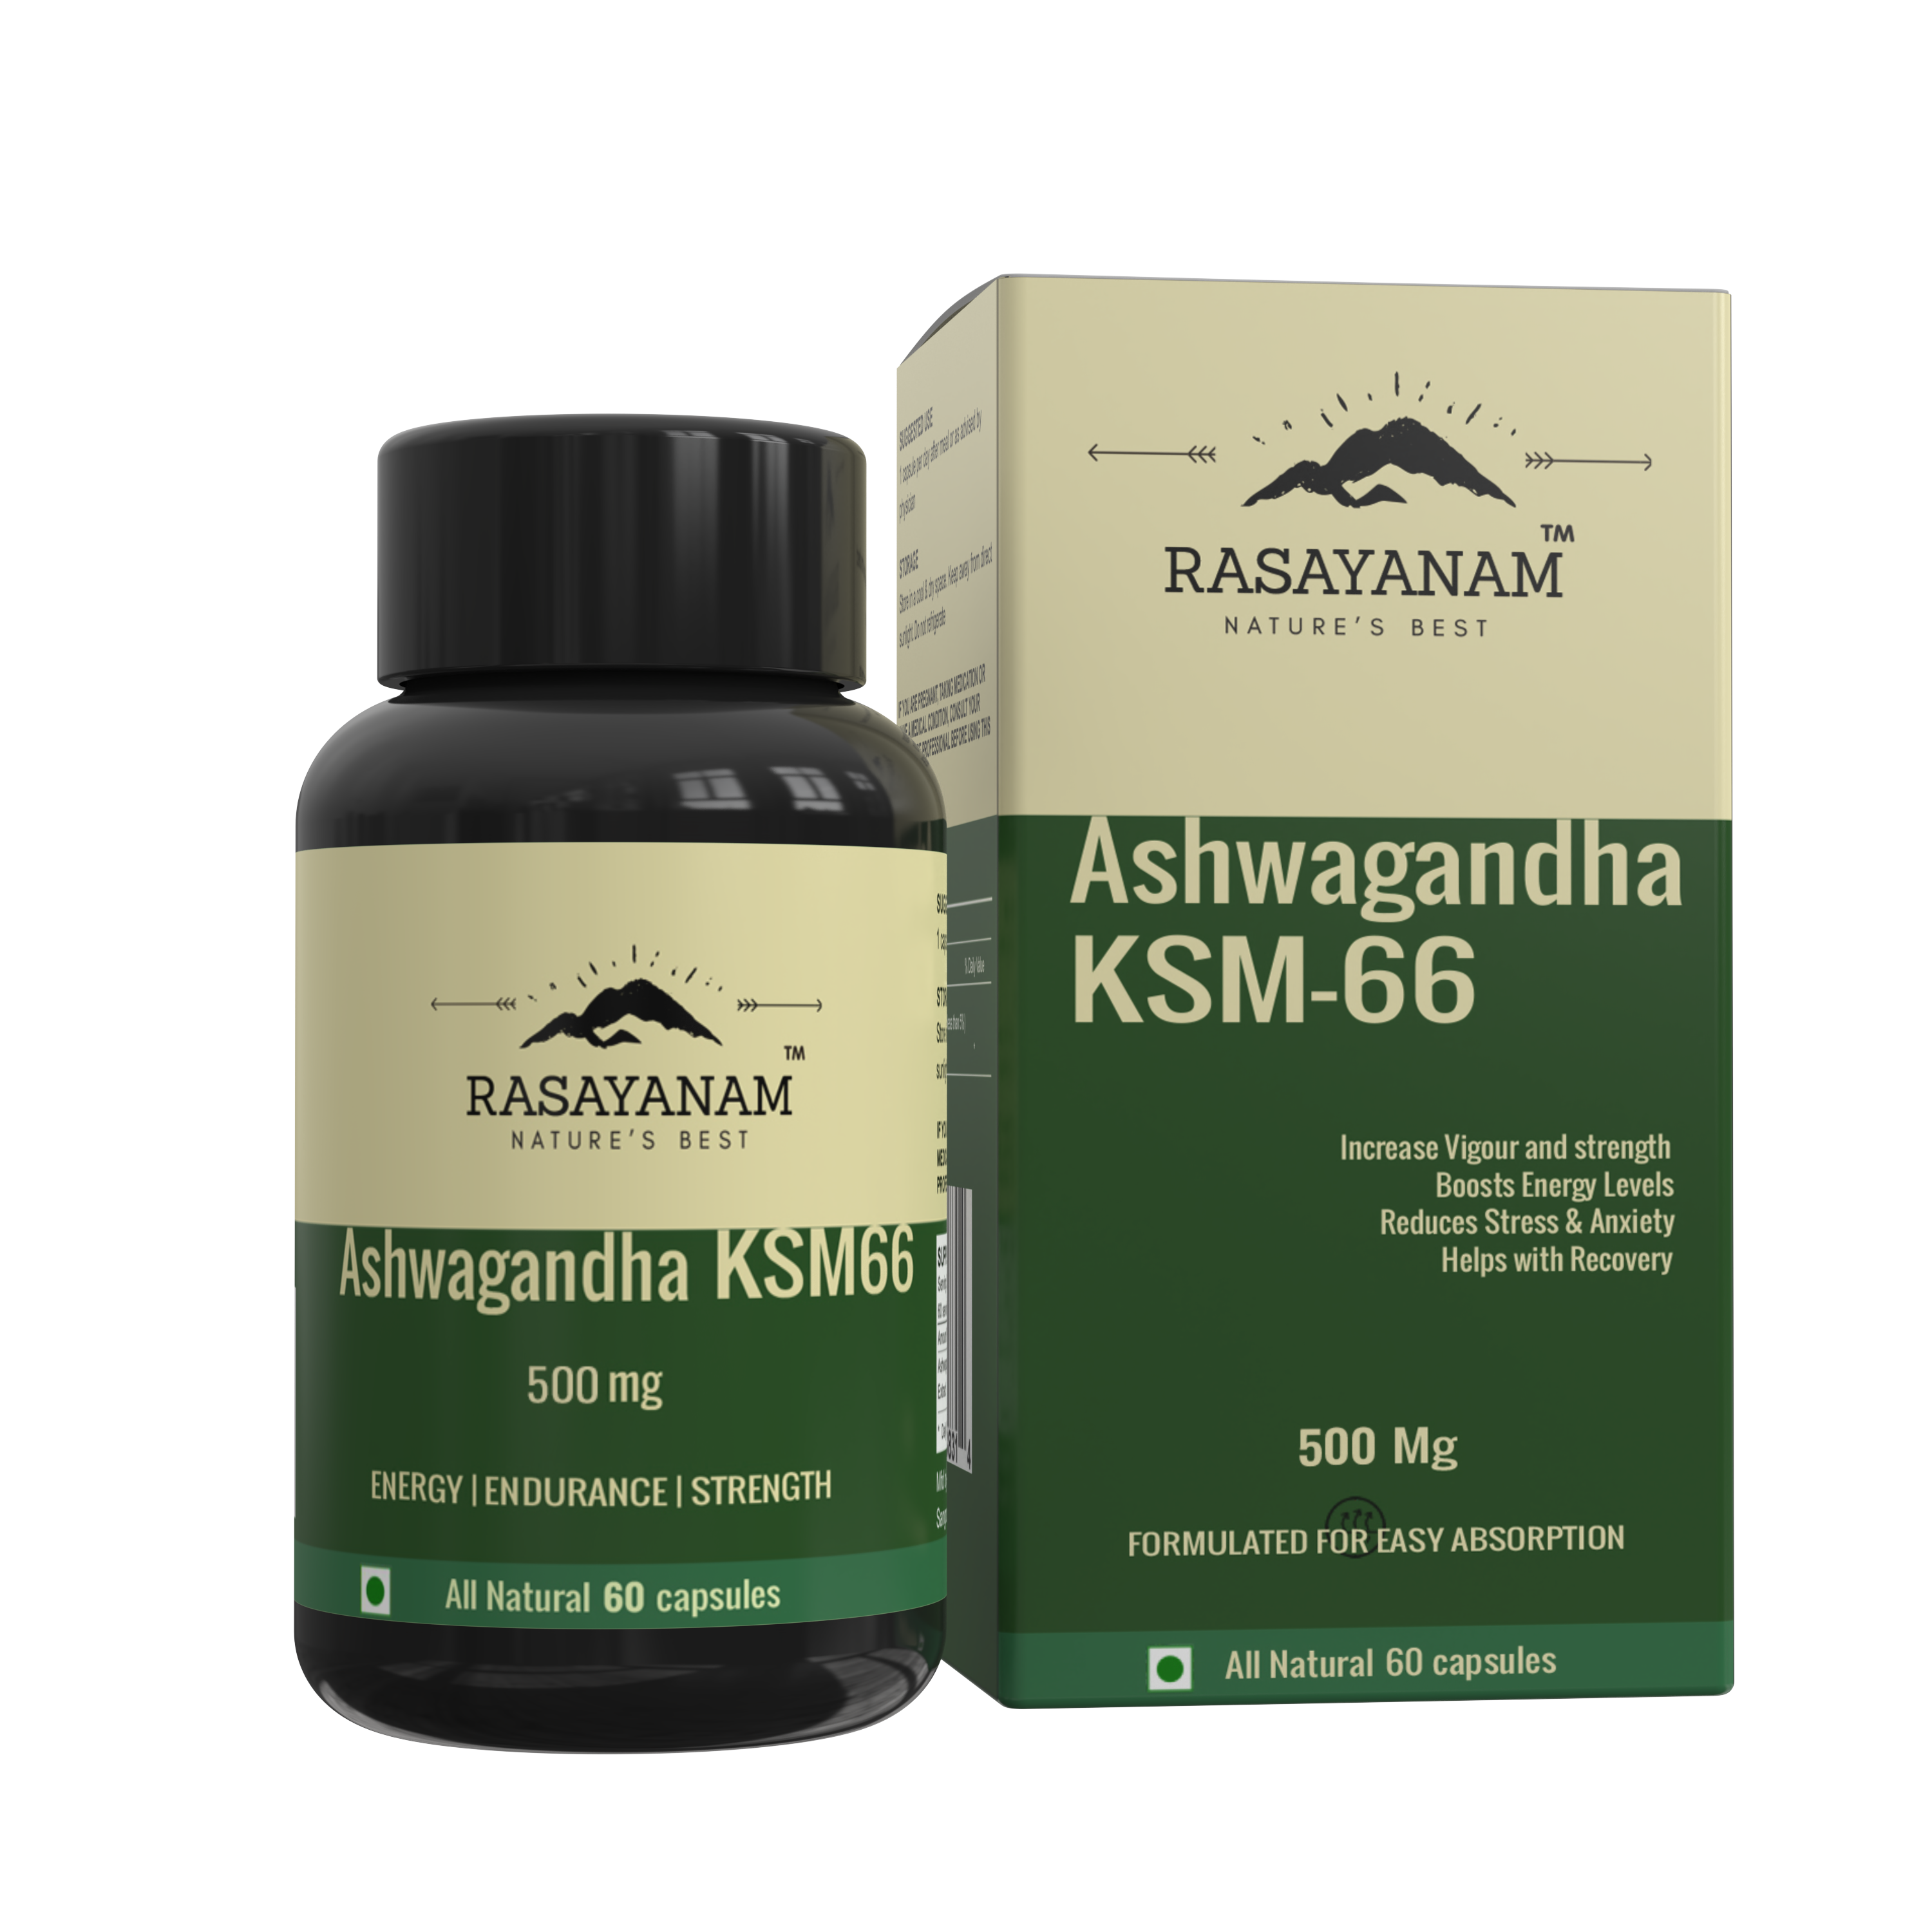 Buy Rasayanam Ashwagandha KSM-66 (500 mg) at Best Price Online